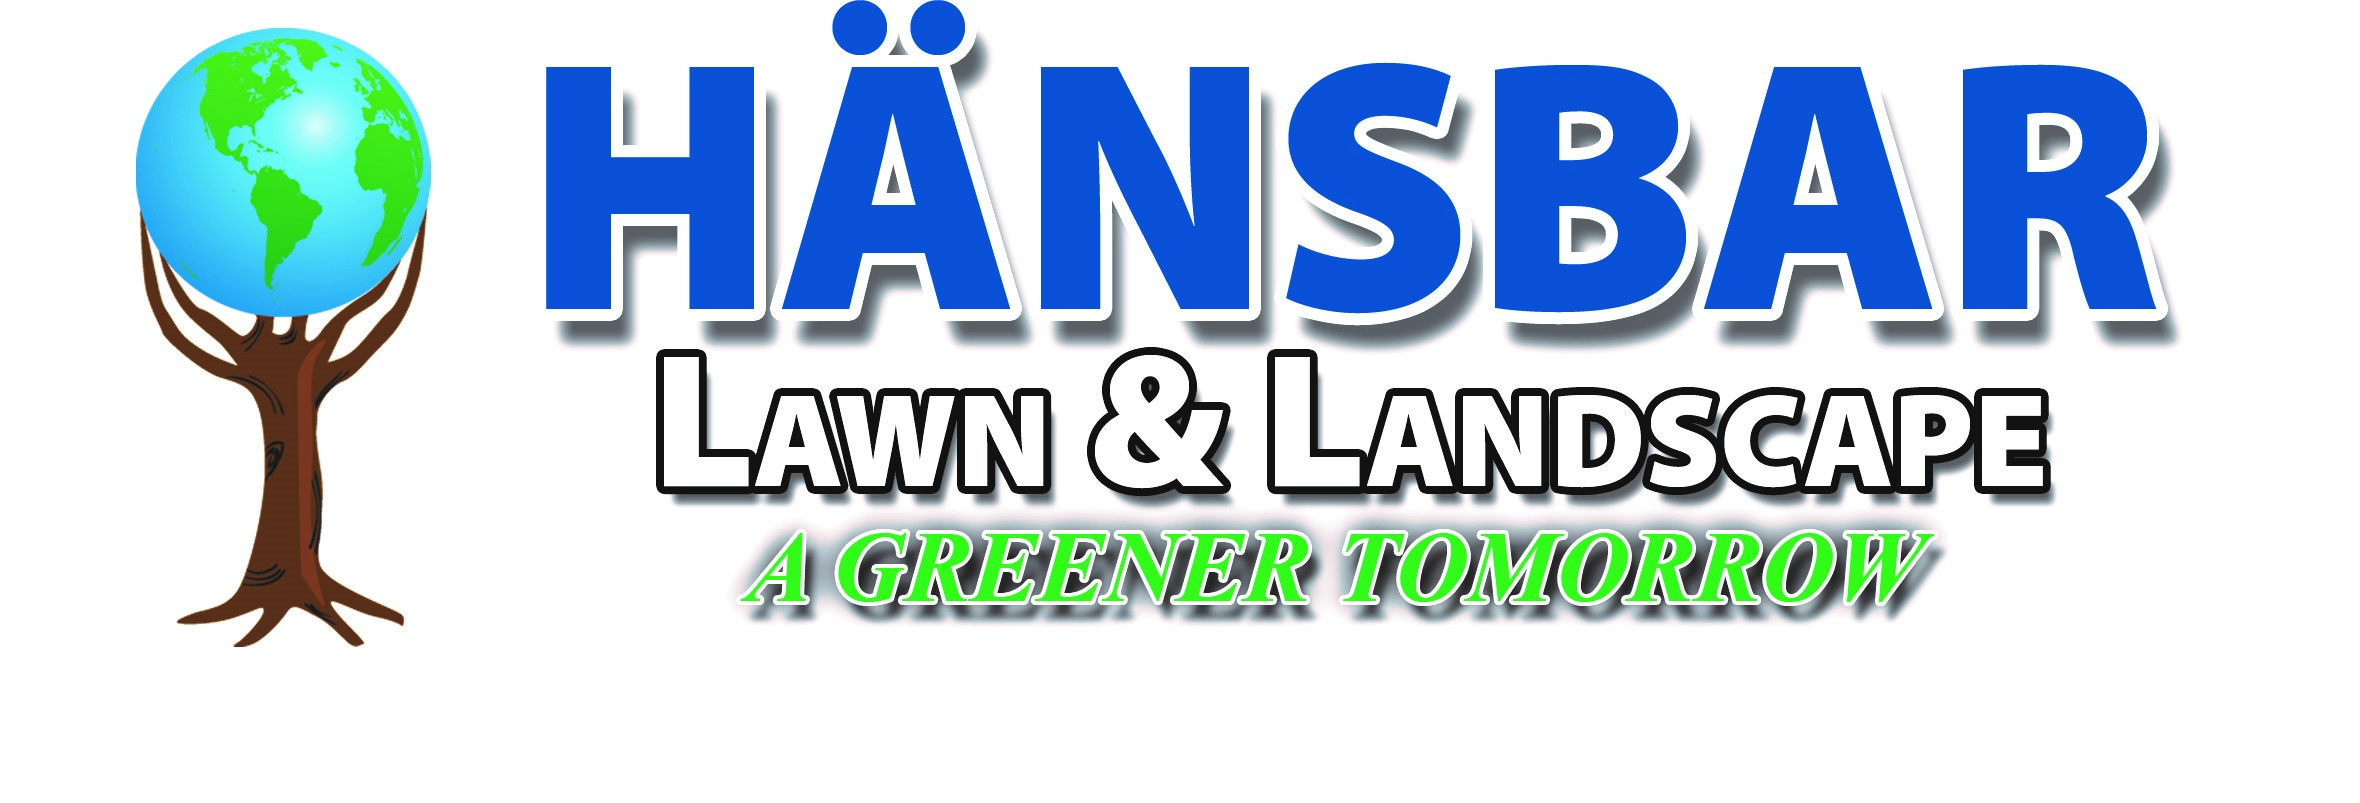 Hansbar Lawn & Landscape, LLC Logo